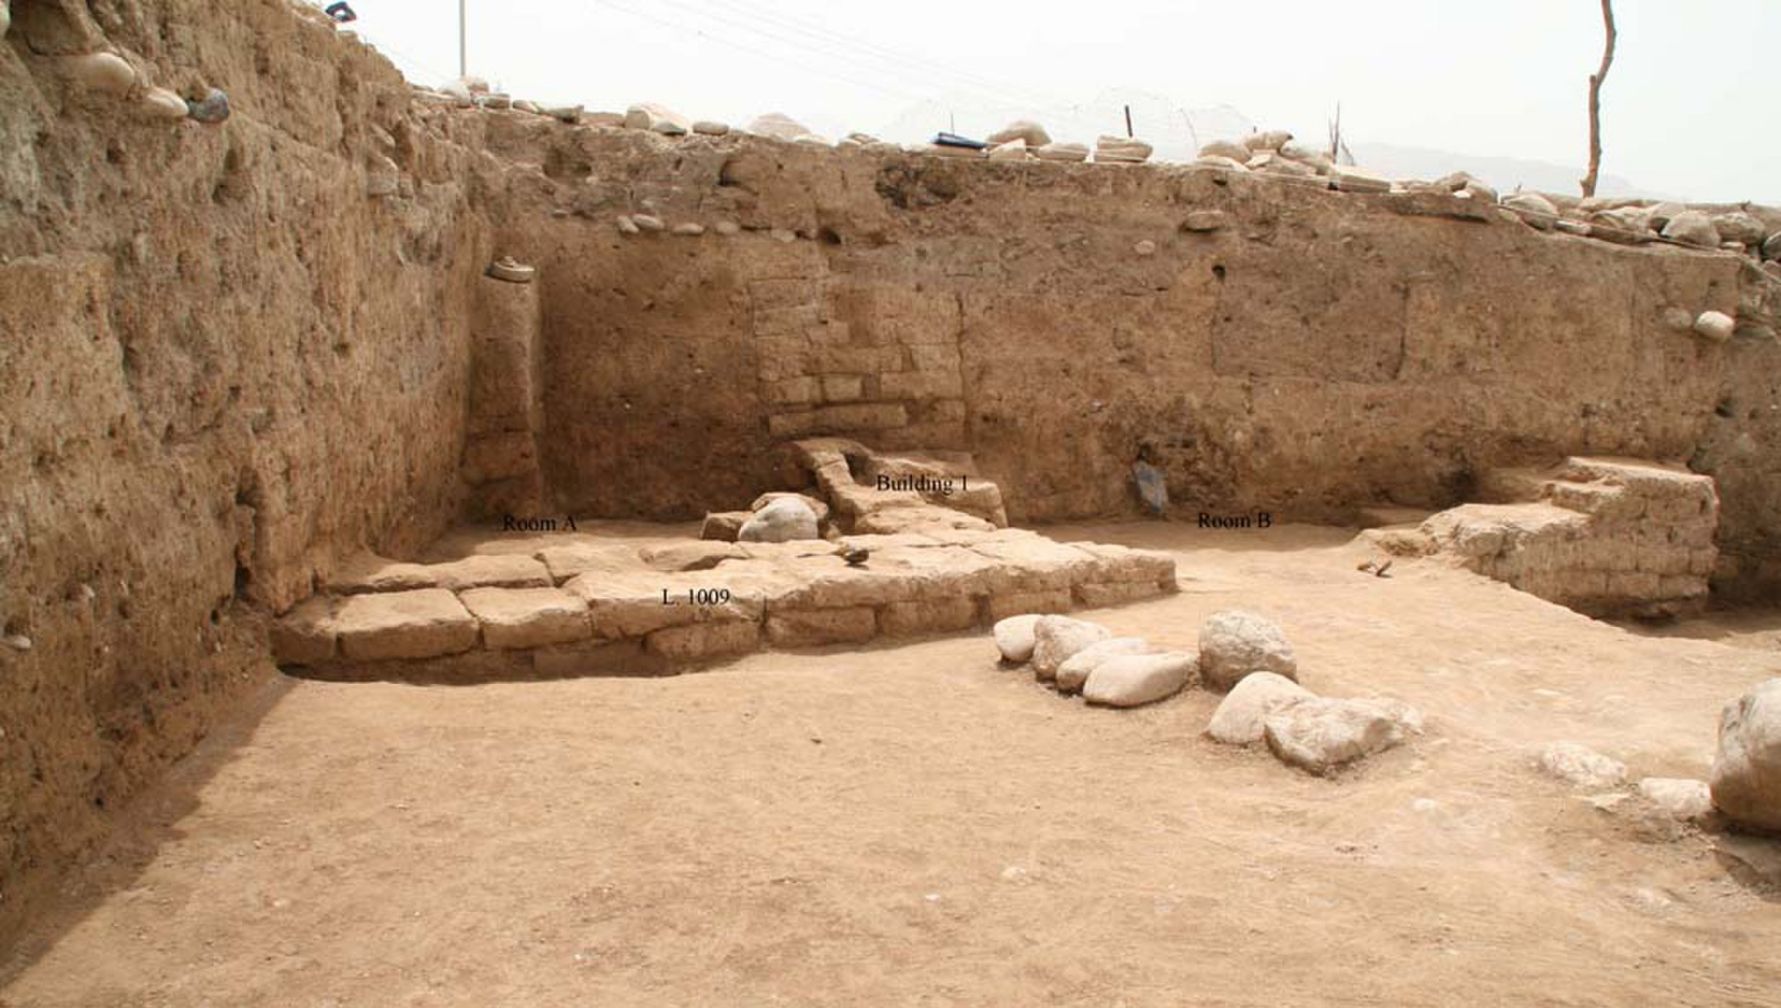 伊拉克北部库尔德斯坦地区的考古学家发现了一座名为“伊杜”的古城。 该遗址早在新石器时代就已被占领，当时中东地区首次出现了农业，该城市在 3,300 至 2,900 年前达到了最大程度。 这里展示的建筑是一座住宅结构，至少有两个房间，这可能是该城市生命中相对较晚的时期，可能是大约 2,000 年前帕提亚帝国控制该地区的时候。